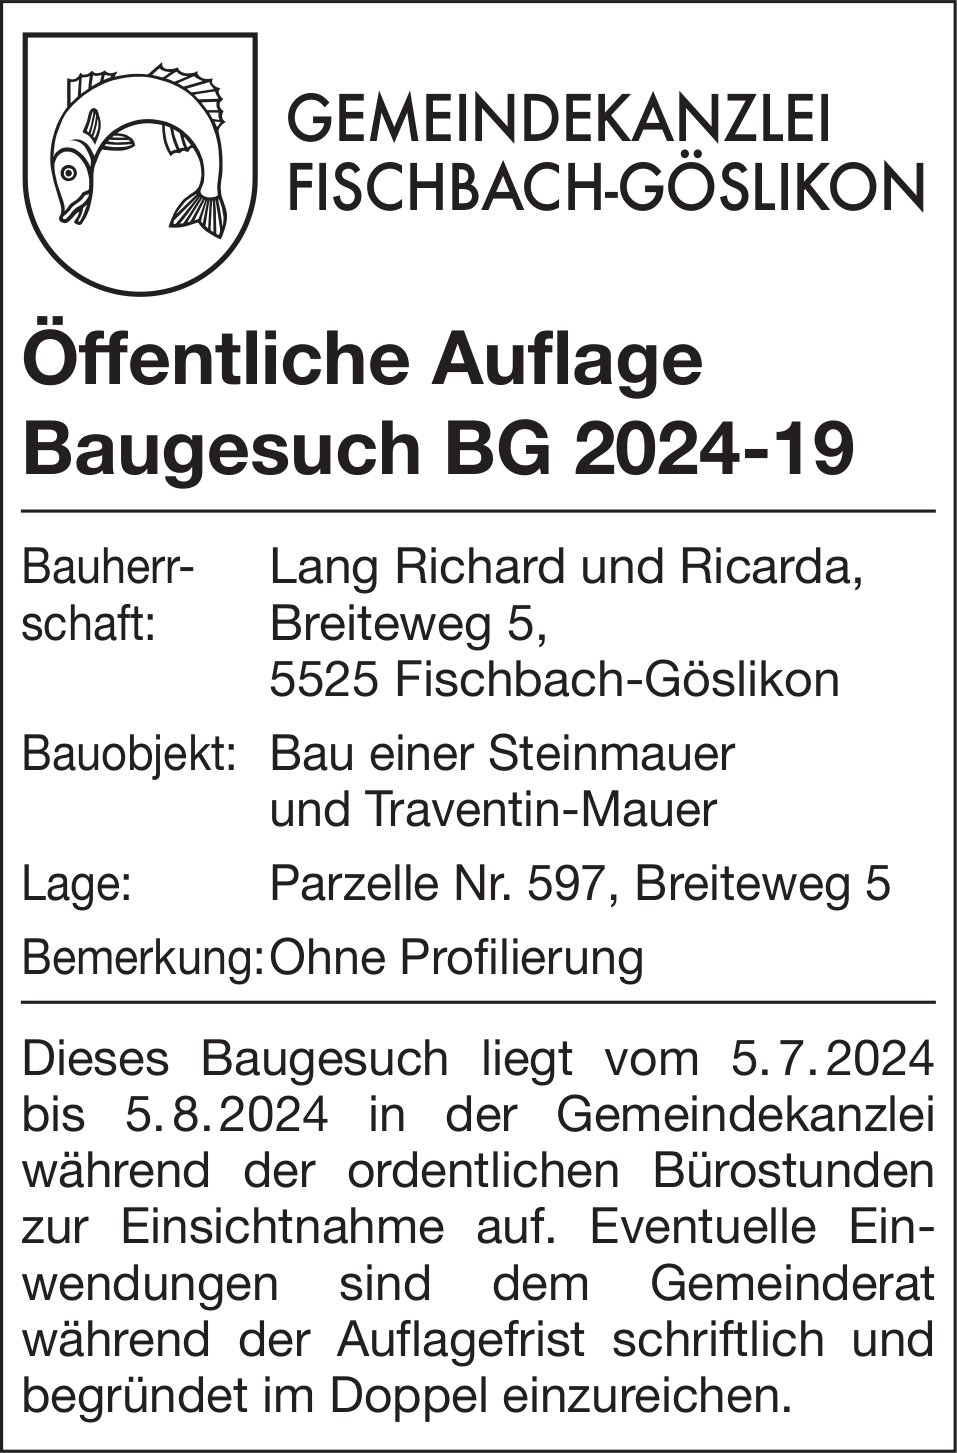 Baugesuche, Fischbach-Göslikon - Lang Richard und Ricarda